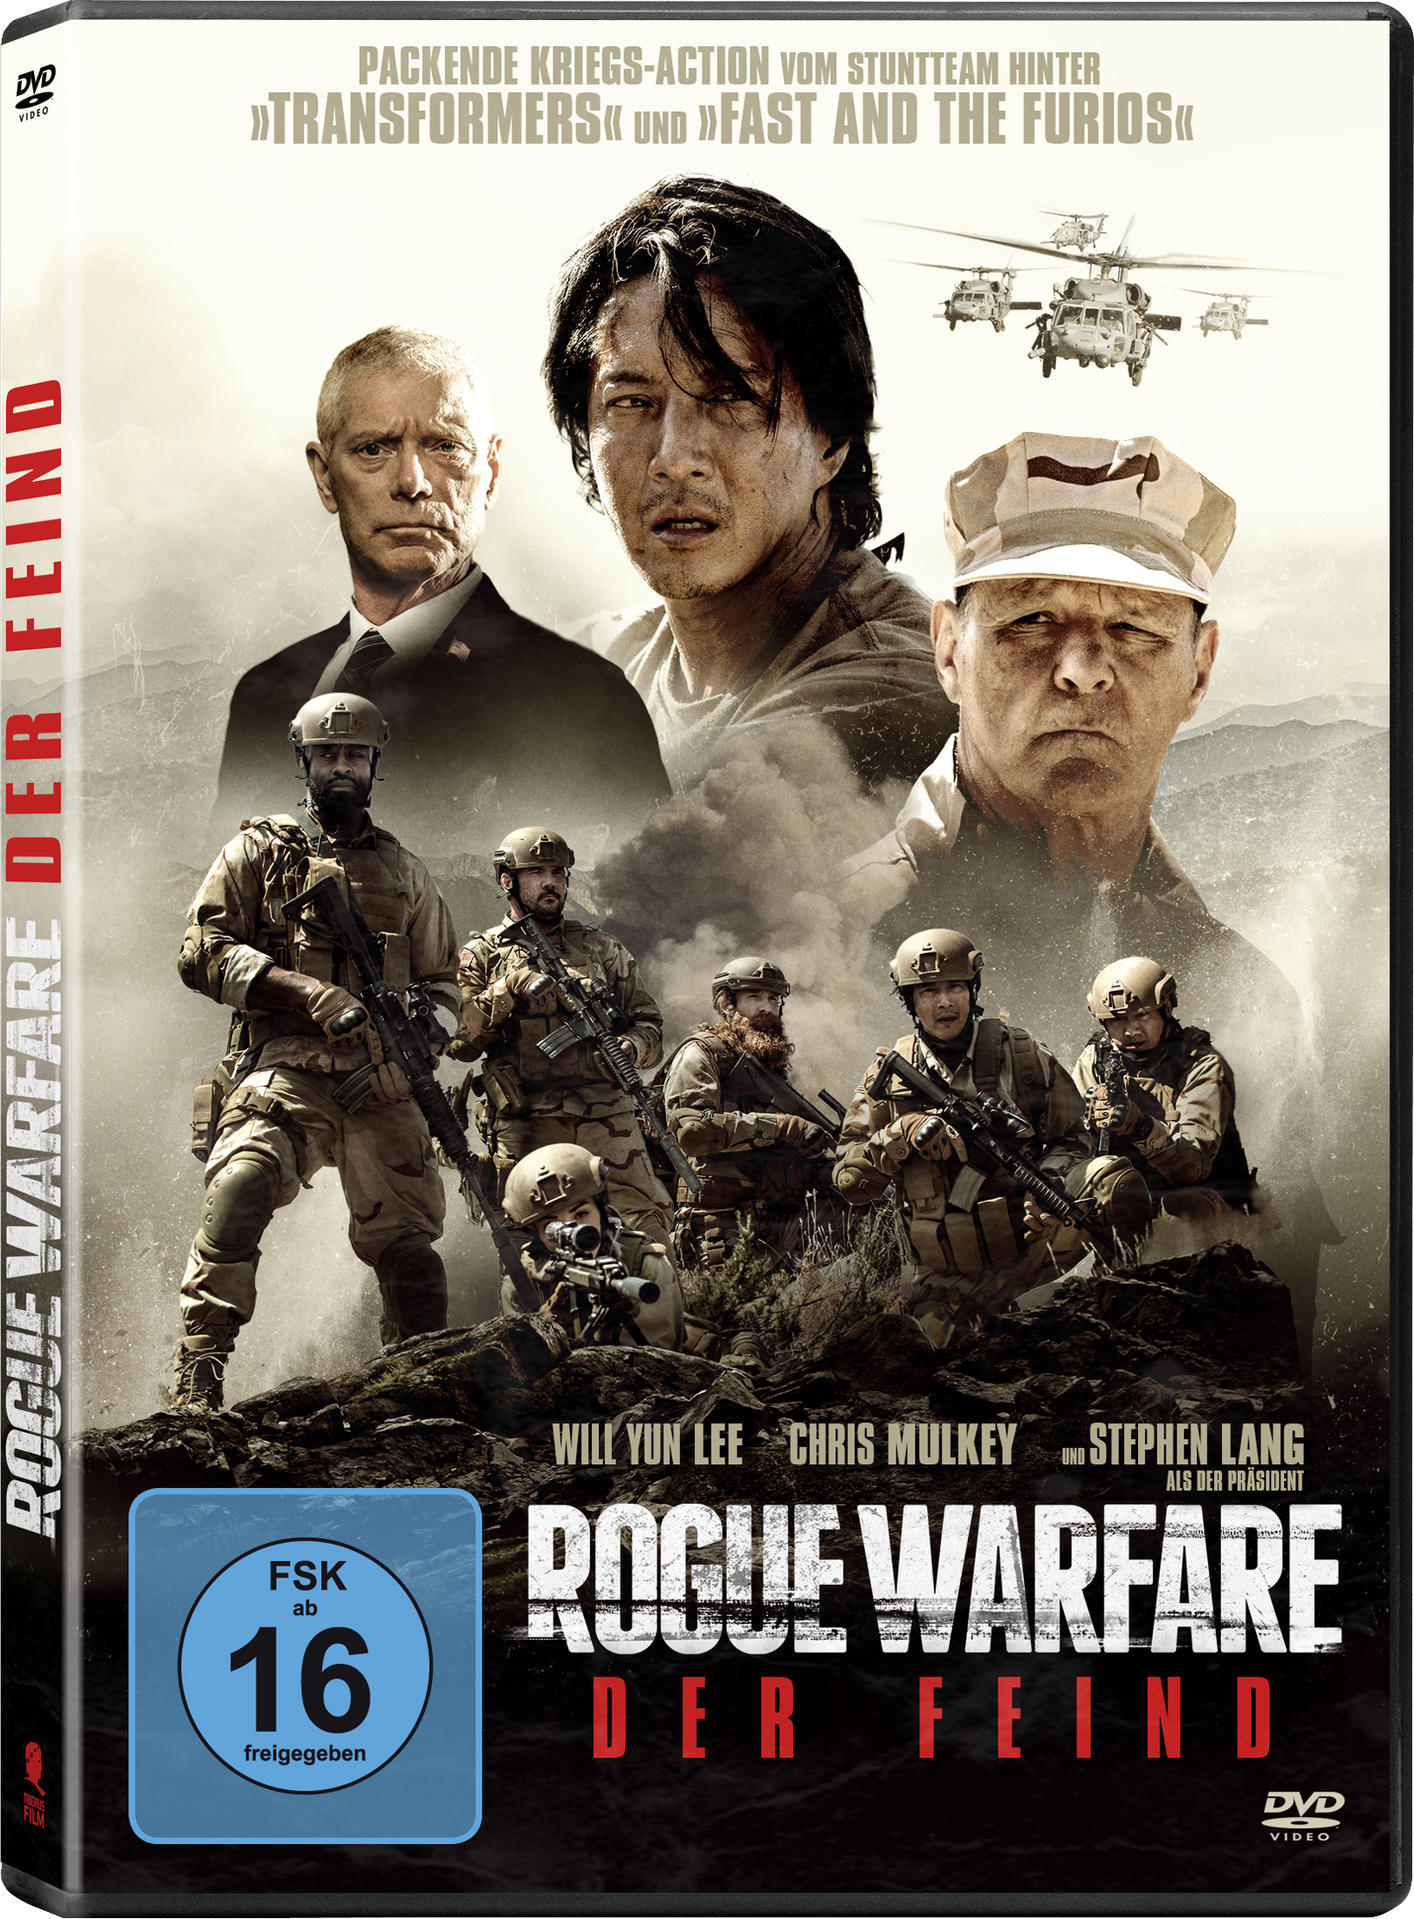 ROGUE WARFARE FEIND - DER DVD